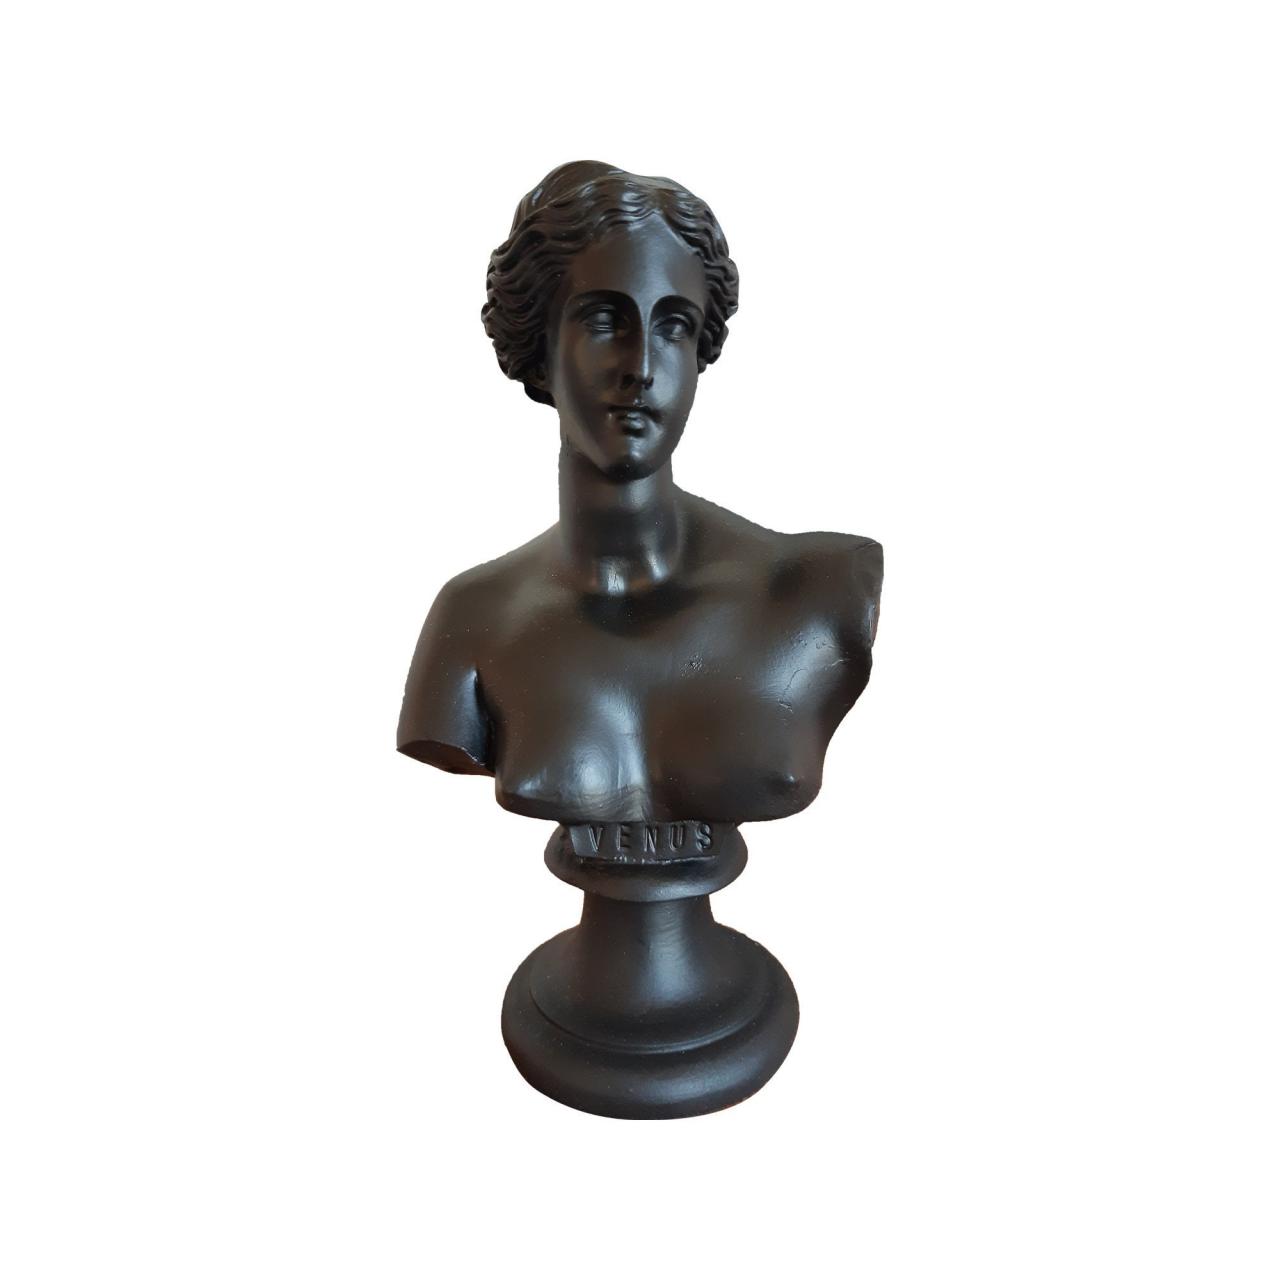 Aphrodite Venus Bust Sculpture - Black Color Statue - Unique Greek Handmade Mythology Figurine 15cm